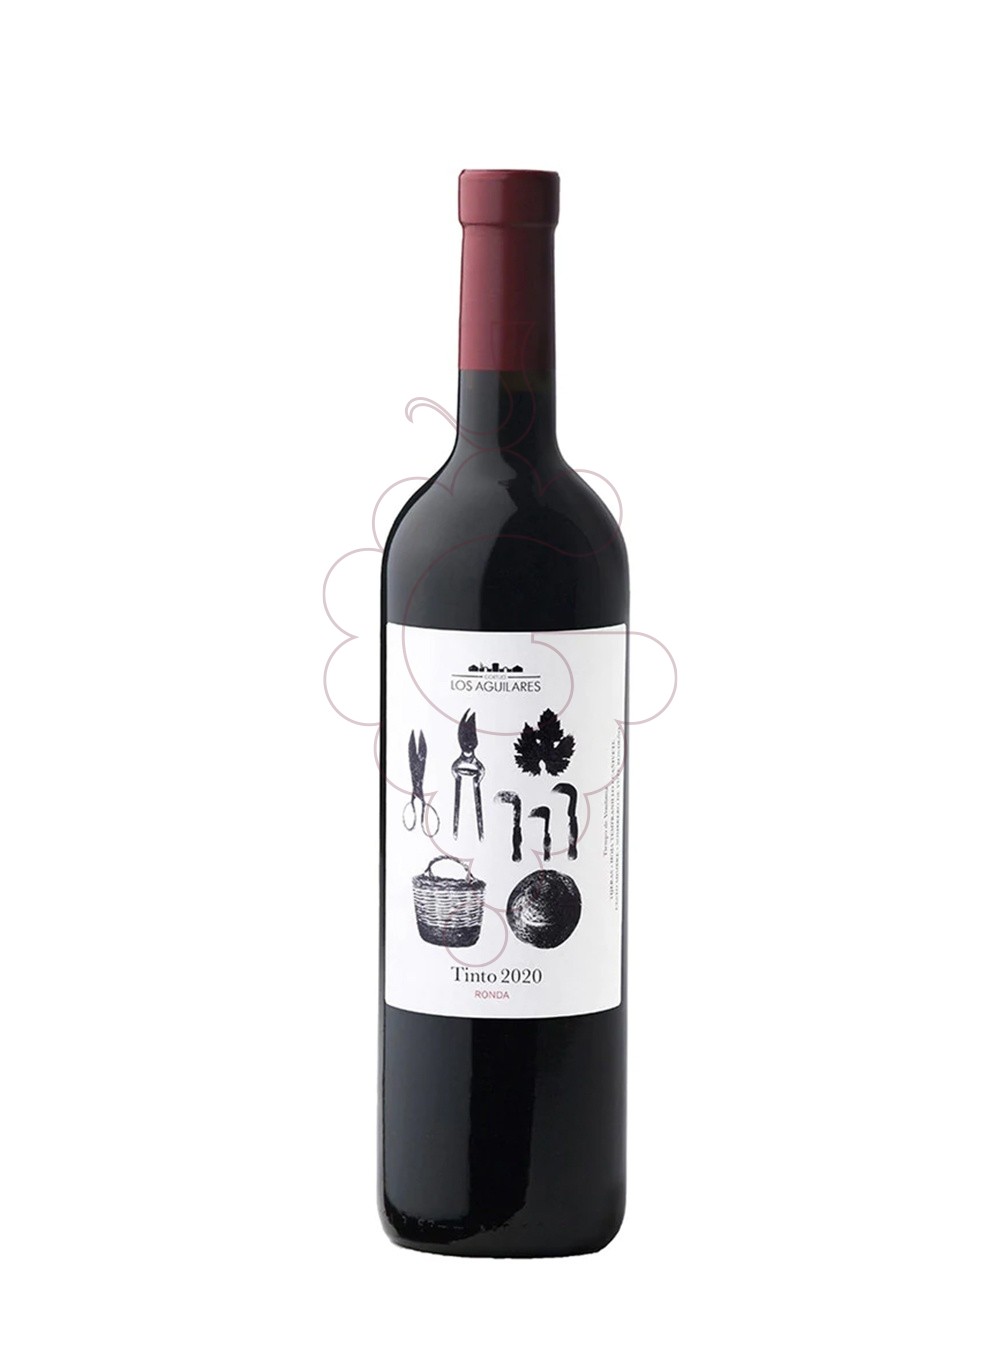 Photo Los aguilares negre 2020 75 cl vin rouge